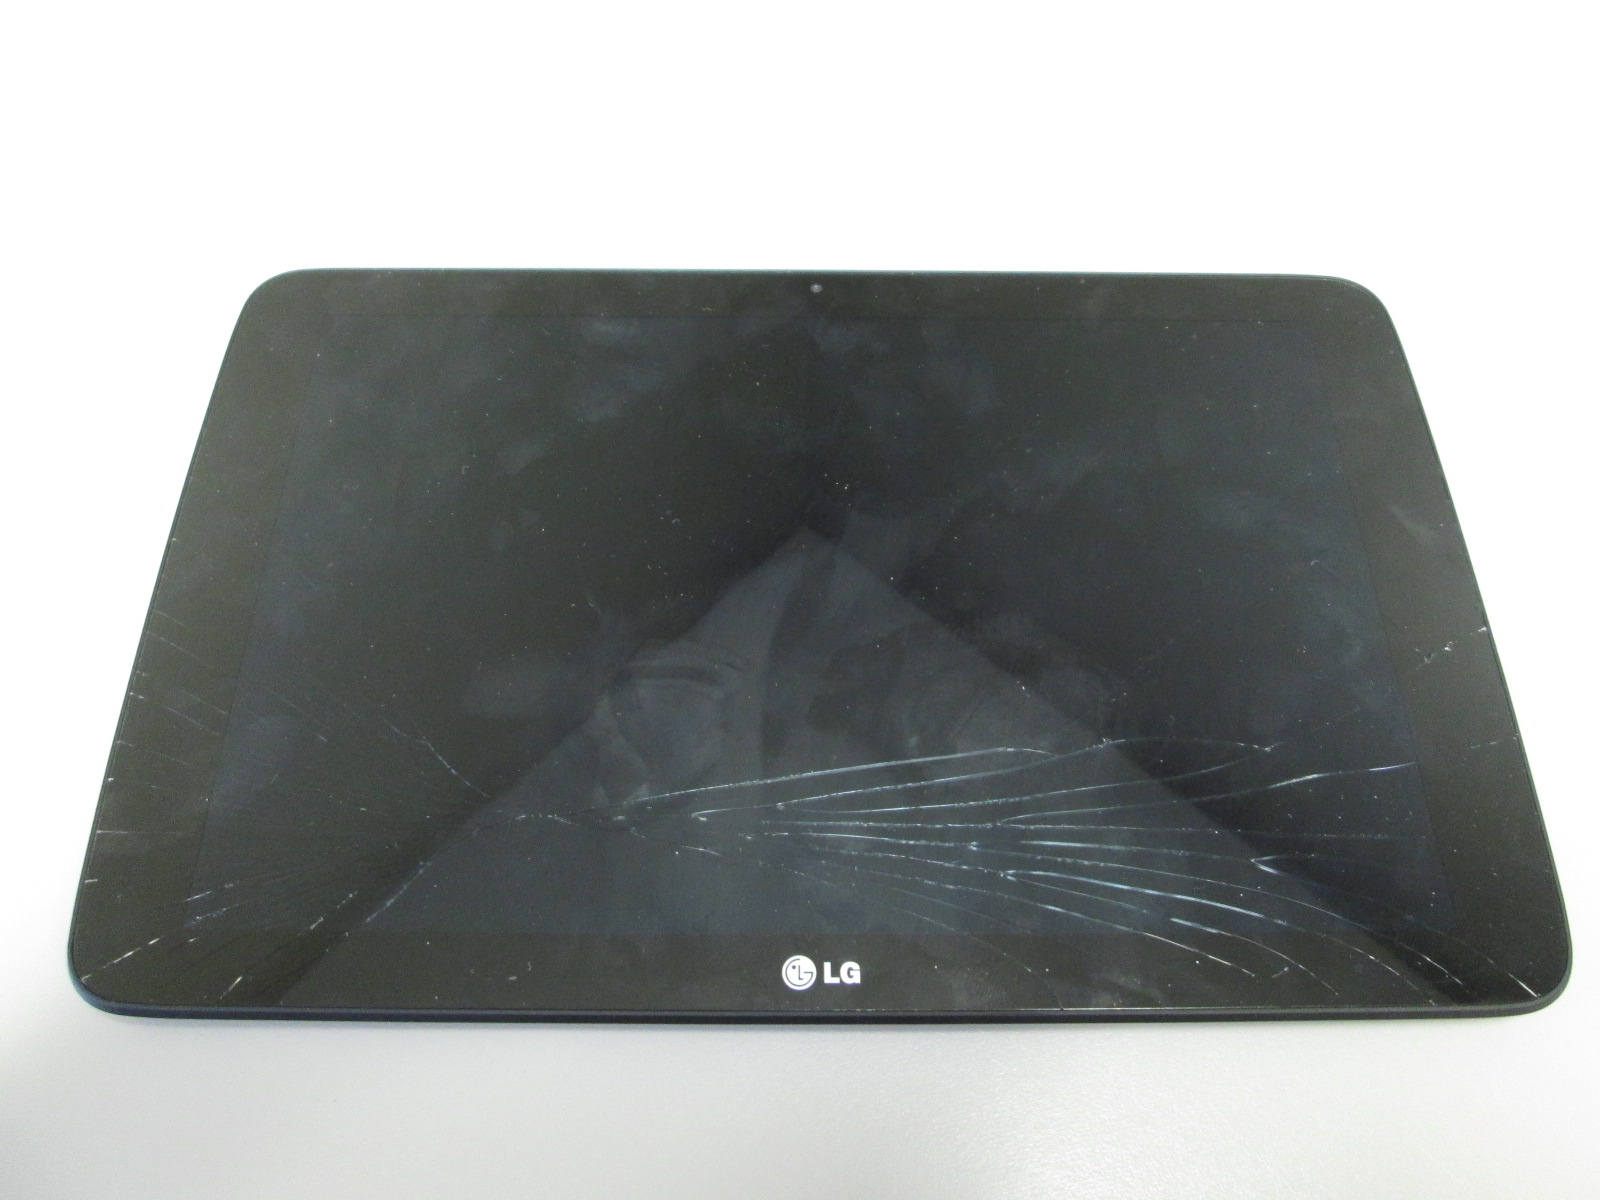 LG-V700 Tablet